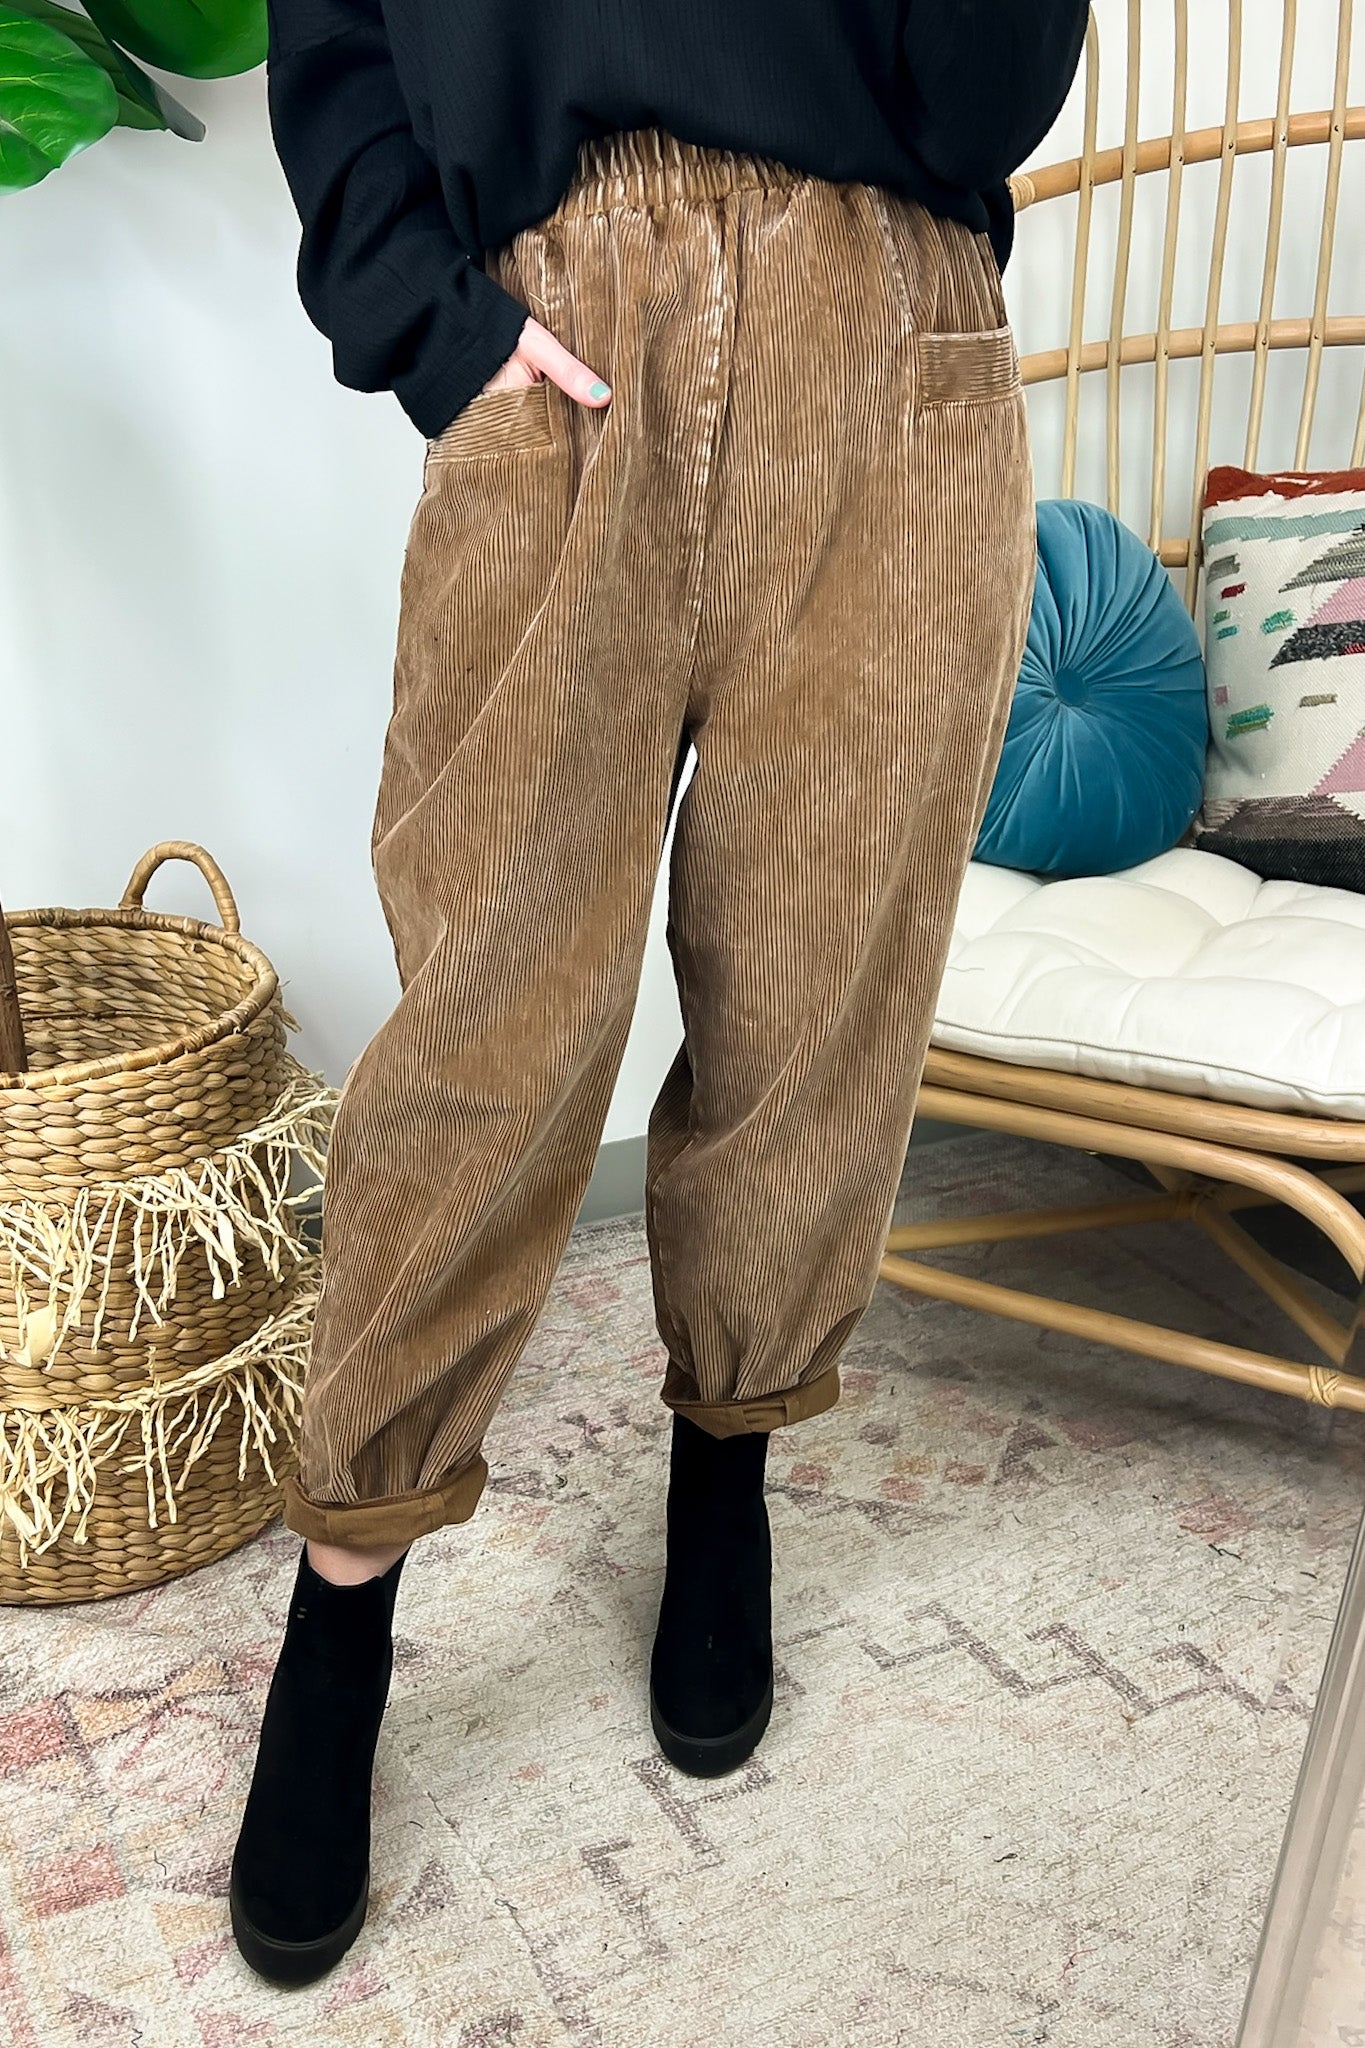 Roxy Khaki Tan Corduroy Cropped Capri Pants 100% Cotton Size 7